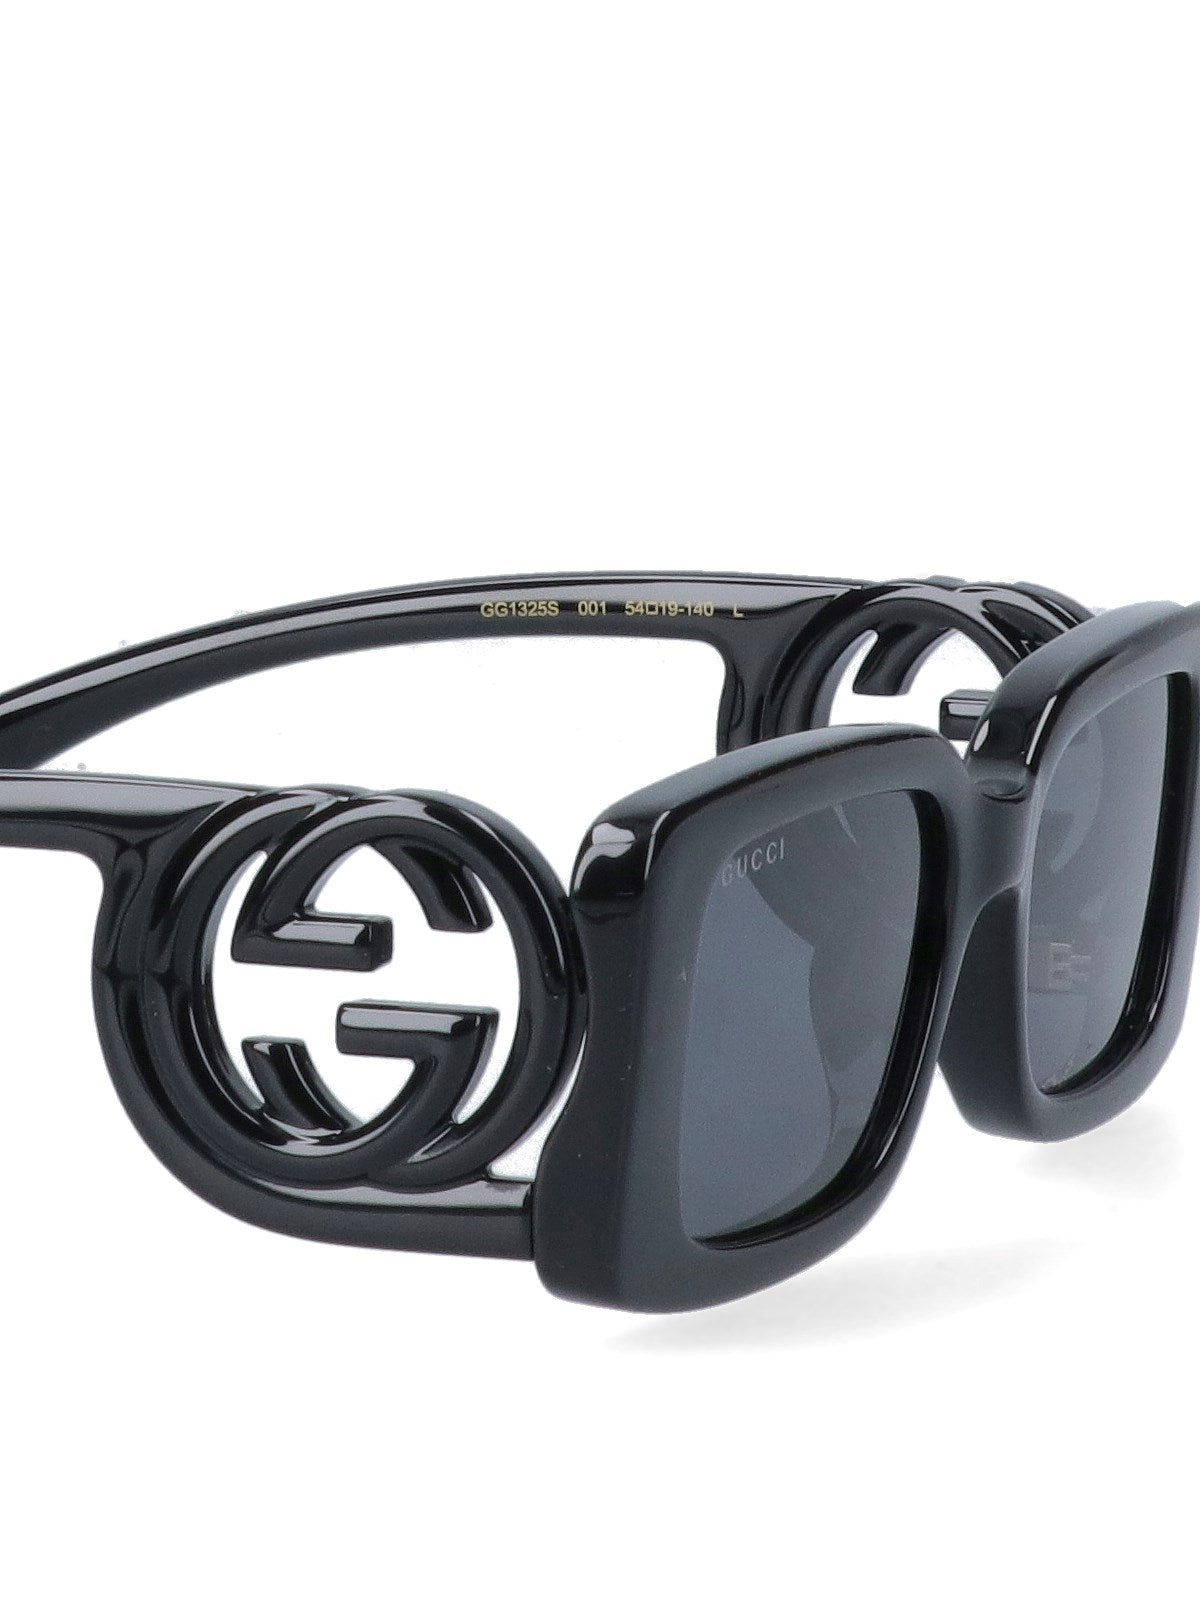 gucci occhiali da sole "gg"-occhiali da sole-Gucci-occhiali da sole "gg" gucci, in acetato nero, design rettangolare, aste dettaglio logo. codice prodotto 733369 j16911012 made in: giappone - 100% acetato - Dresso